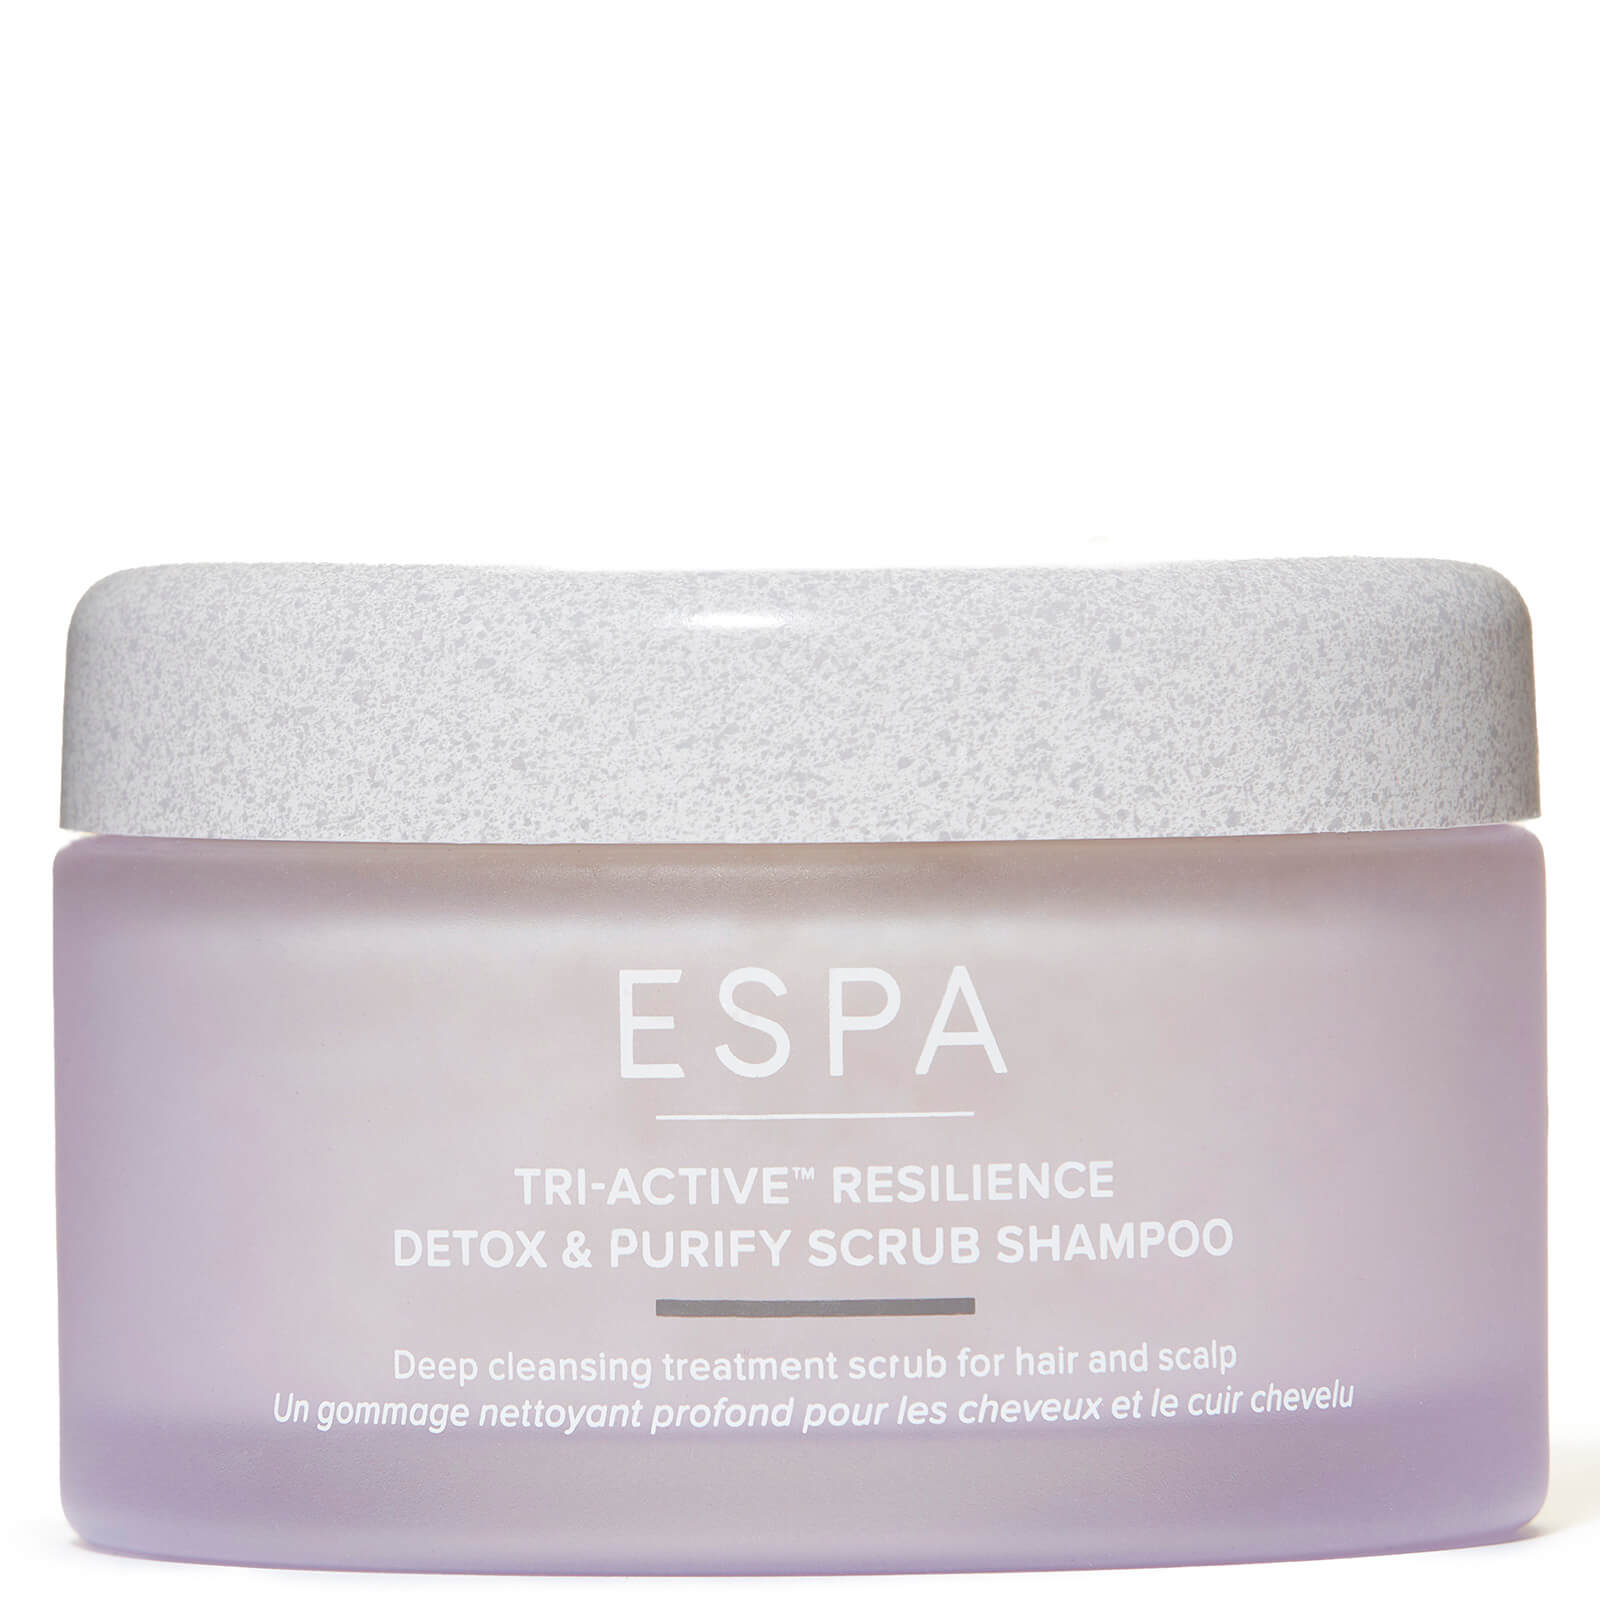 Espa Tri-activetm Resilience Detox & Purify Scrub Shampoo